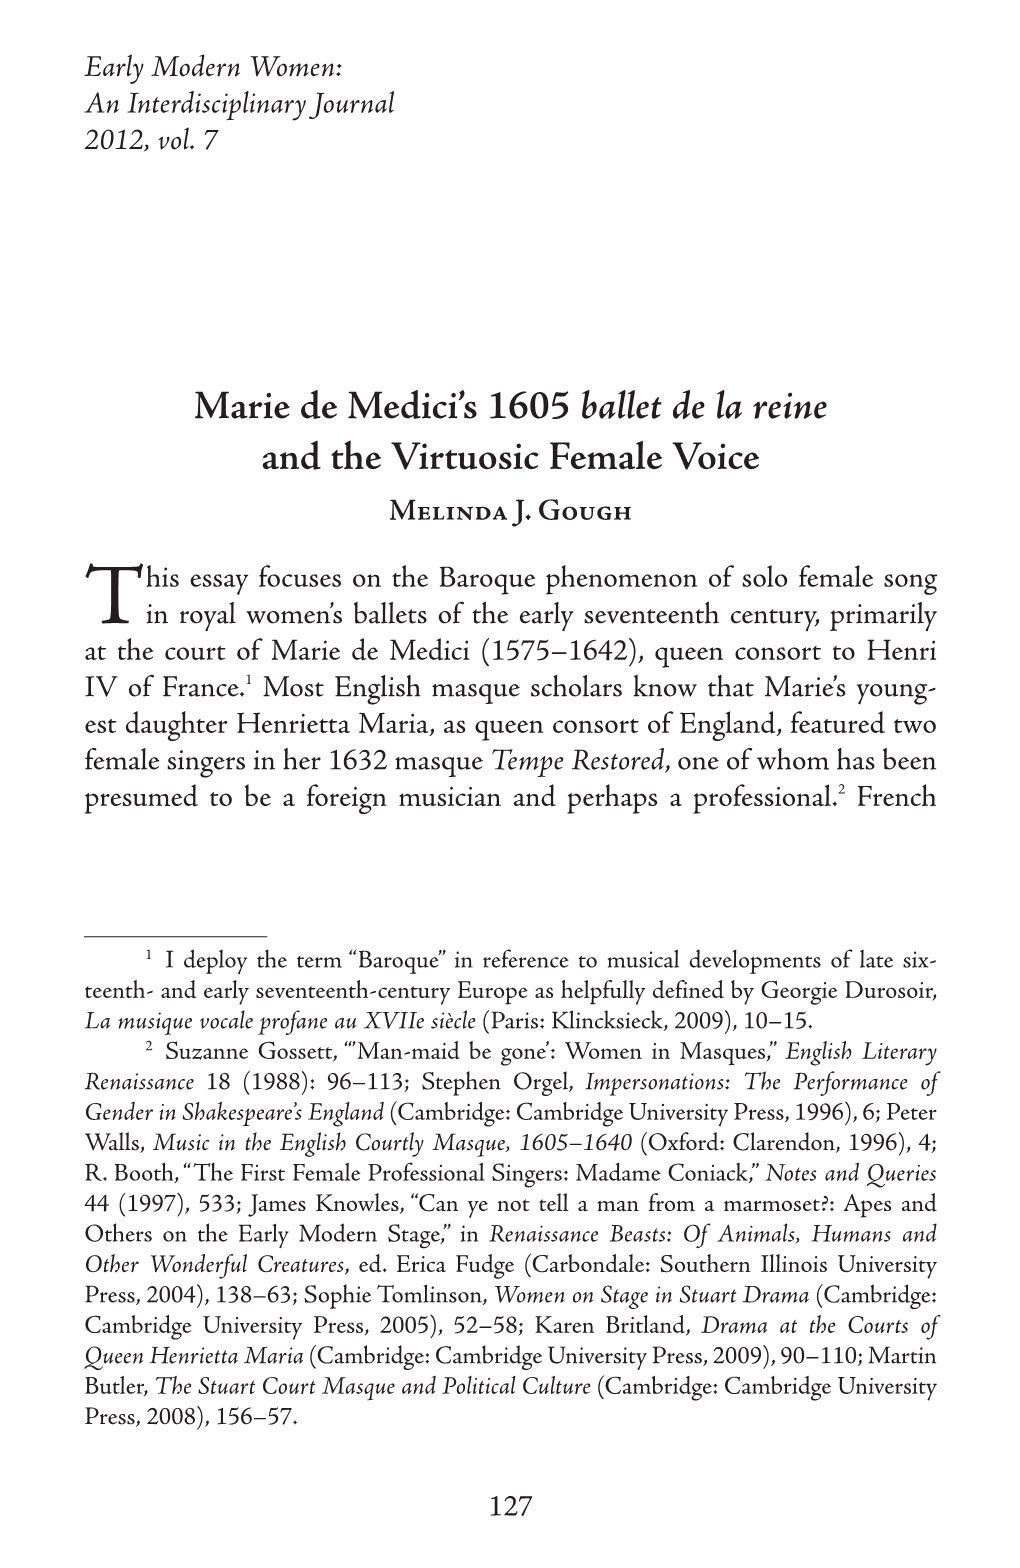 Marie De Medici's 1605 Ballet De La Reine and the Virtuosic Female Voice